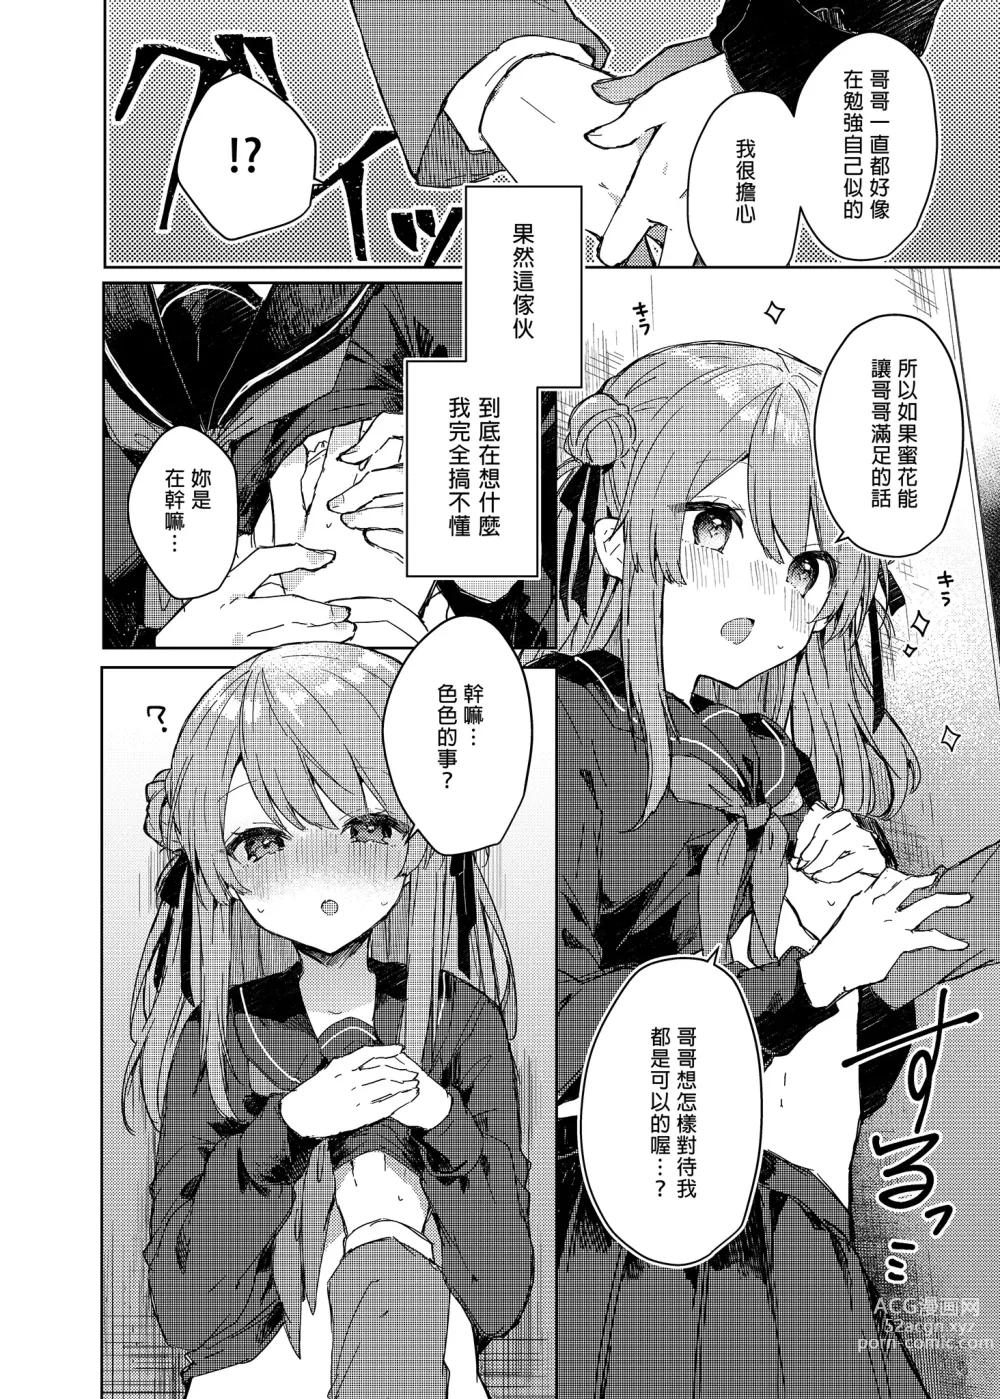 Page 16 of doujinshi 今天開始當個壞孩子。 (decensored)